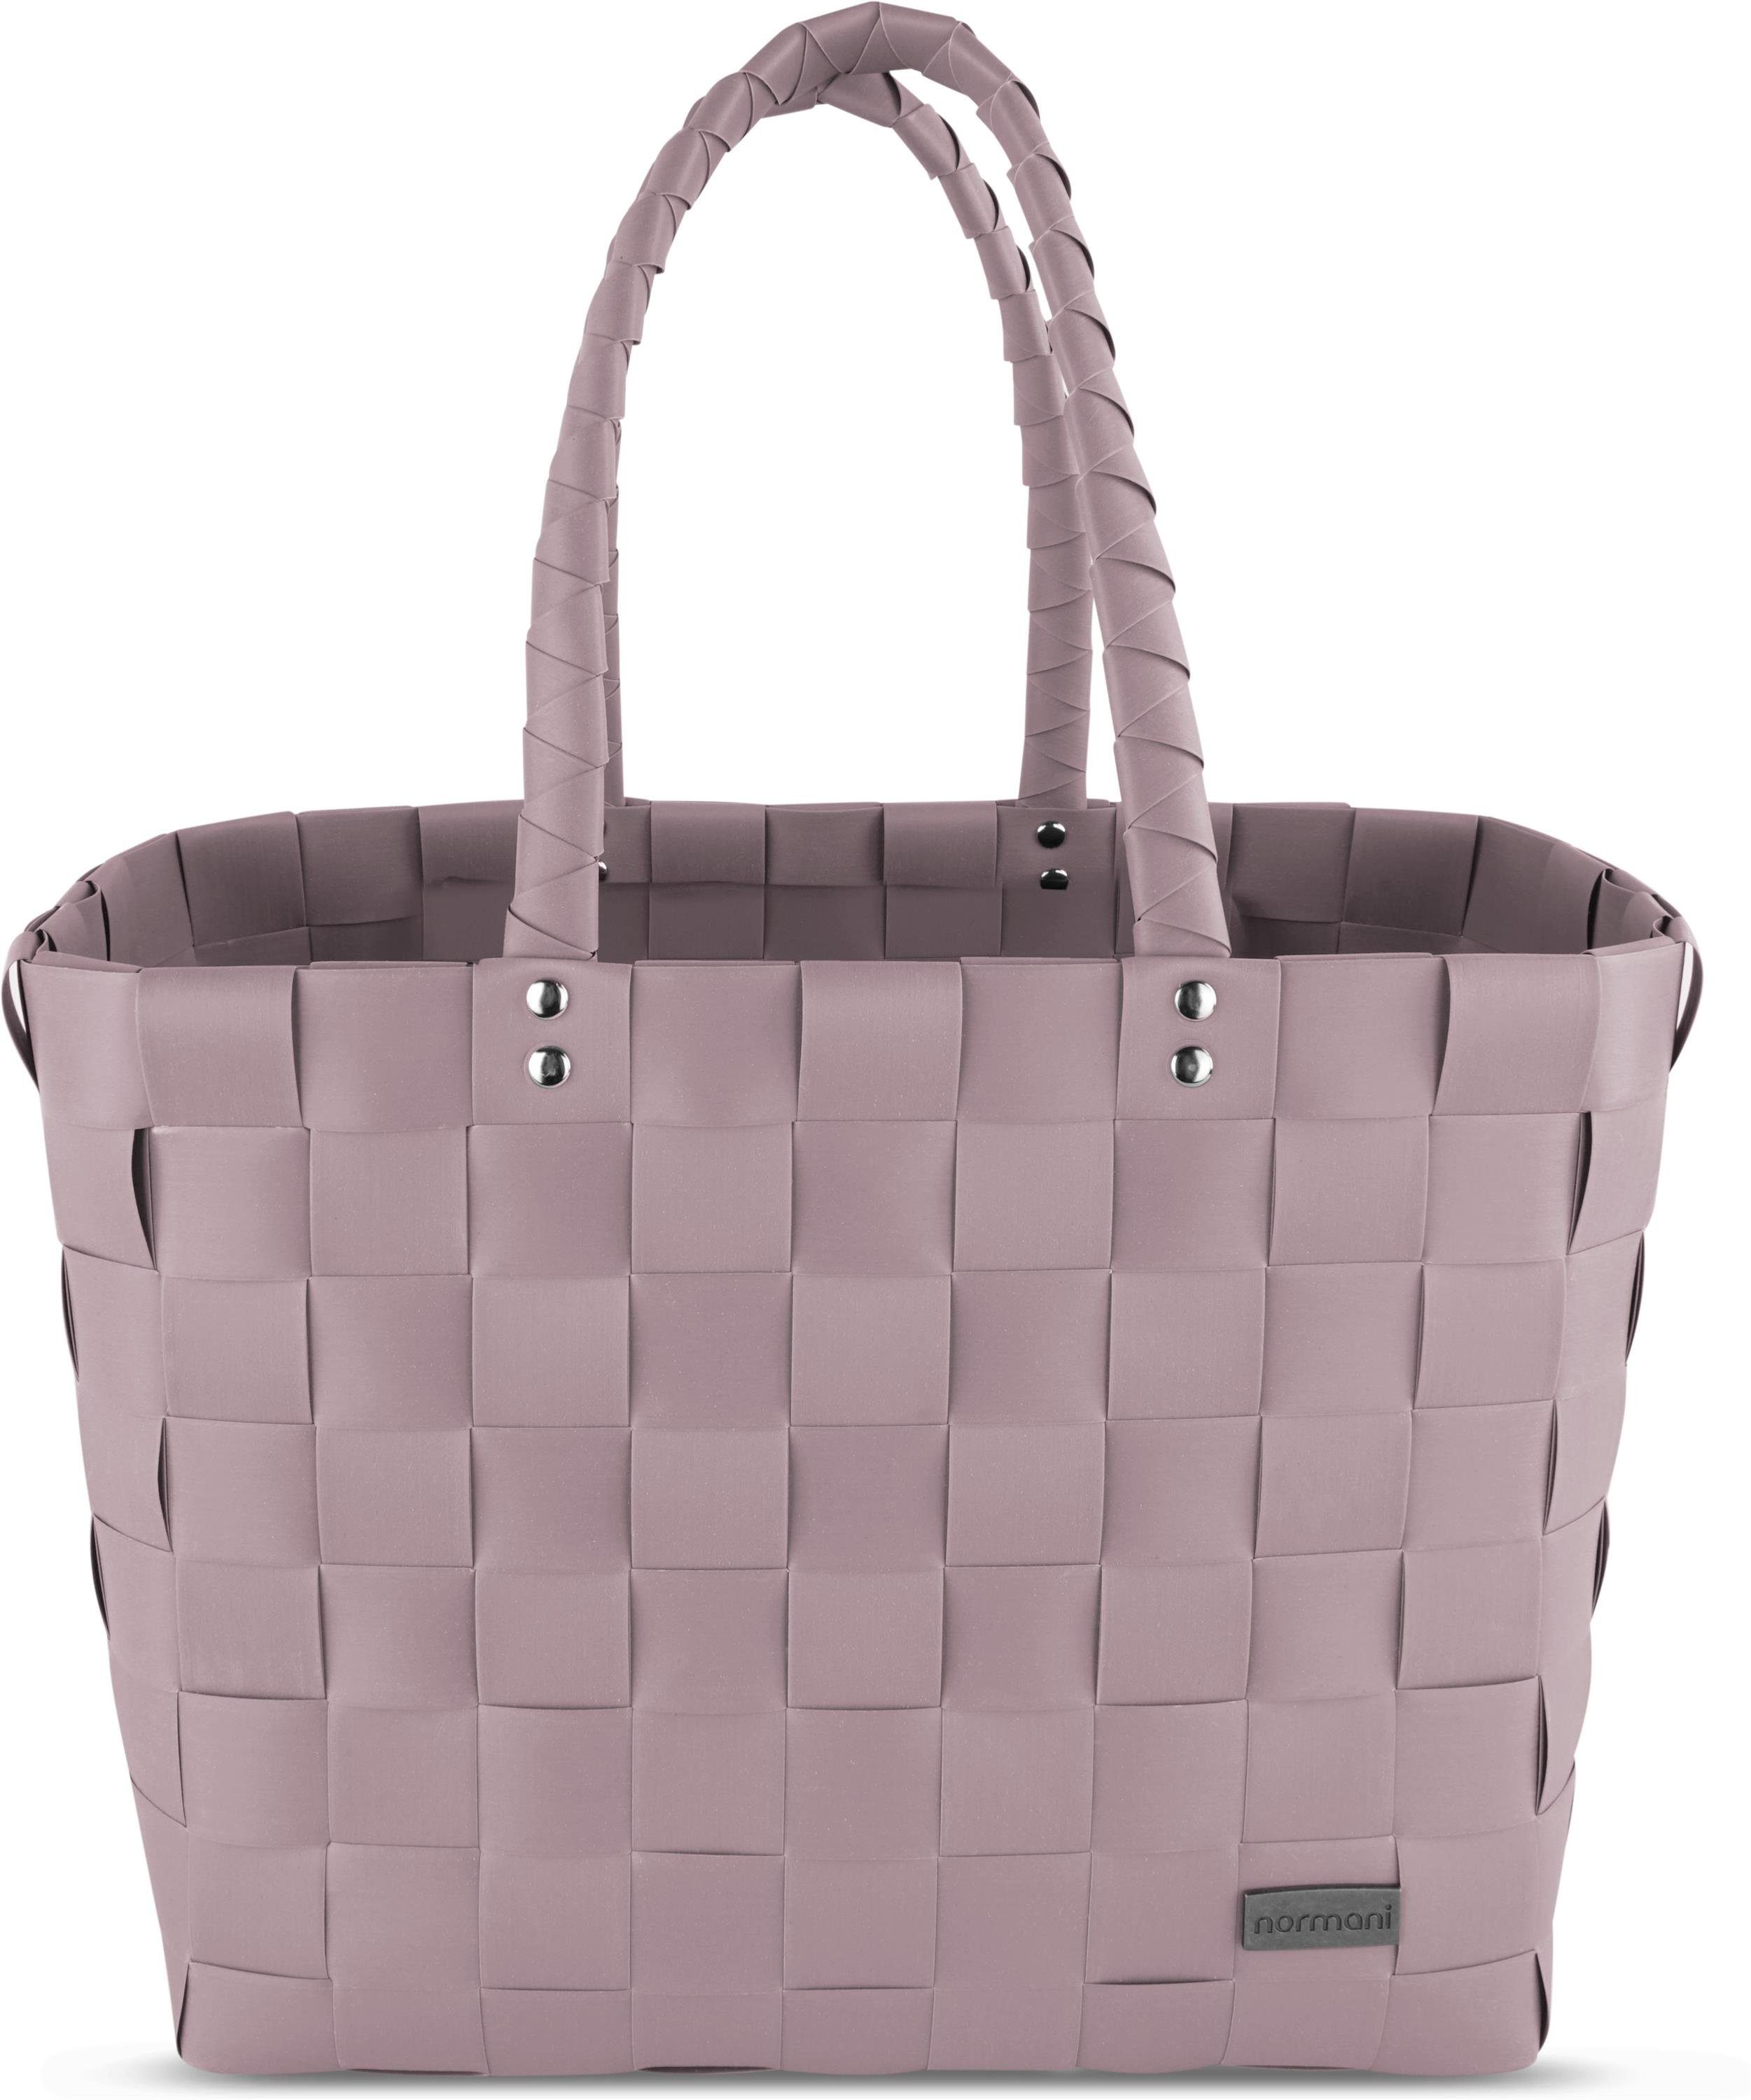 normani Einkaufskorb Einkaufskorb Einkaufstasche aus Kunststoff, 20 l, Flechtkorb aus pflegeleichtem Material Dusty Pink